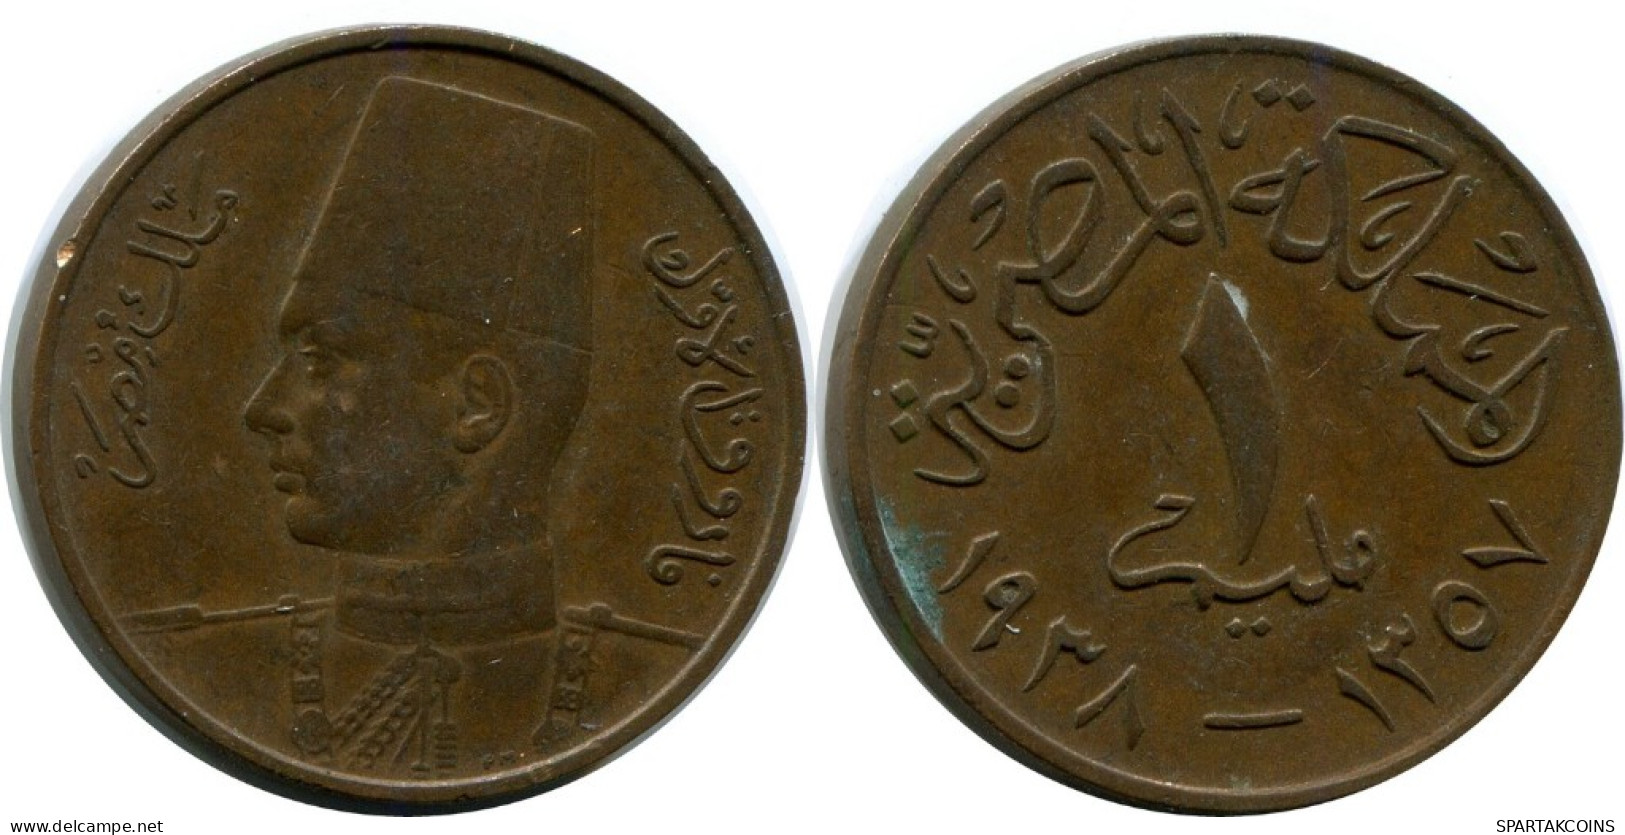 1 MILLIEME 1938 ÄGYPTEN EGYPT Islamisch Münze #AK171.D.A - Aegypten